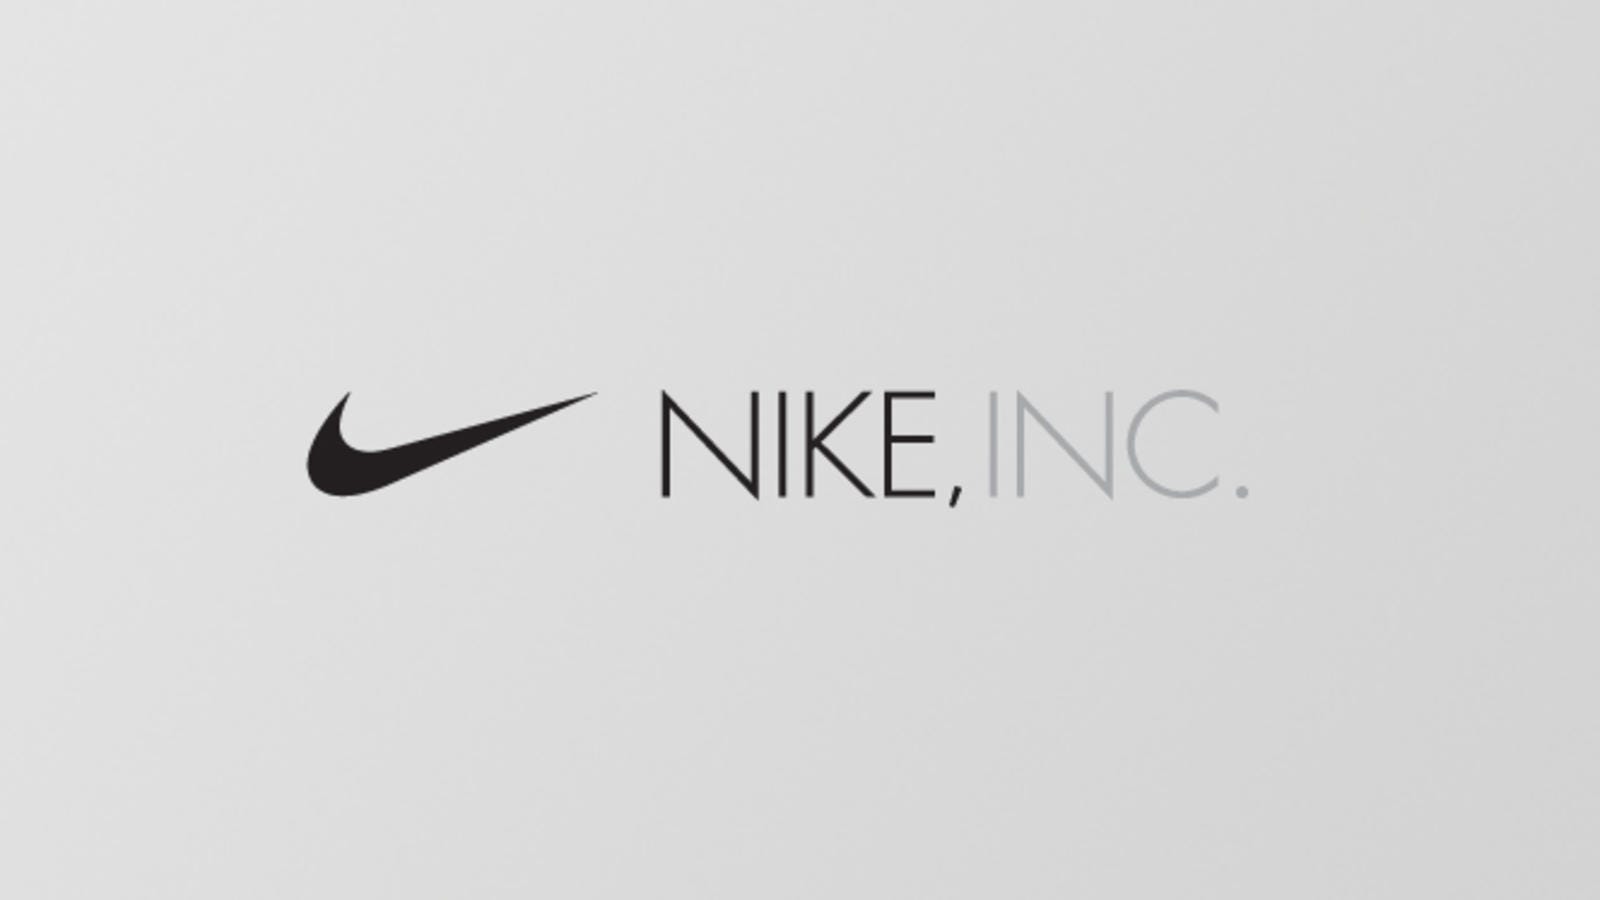 Behind the brand: La storia della Nike | by Valentino Addevico | Medium